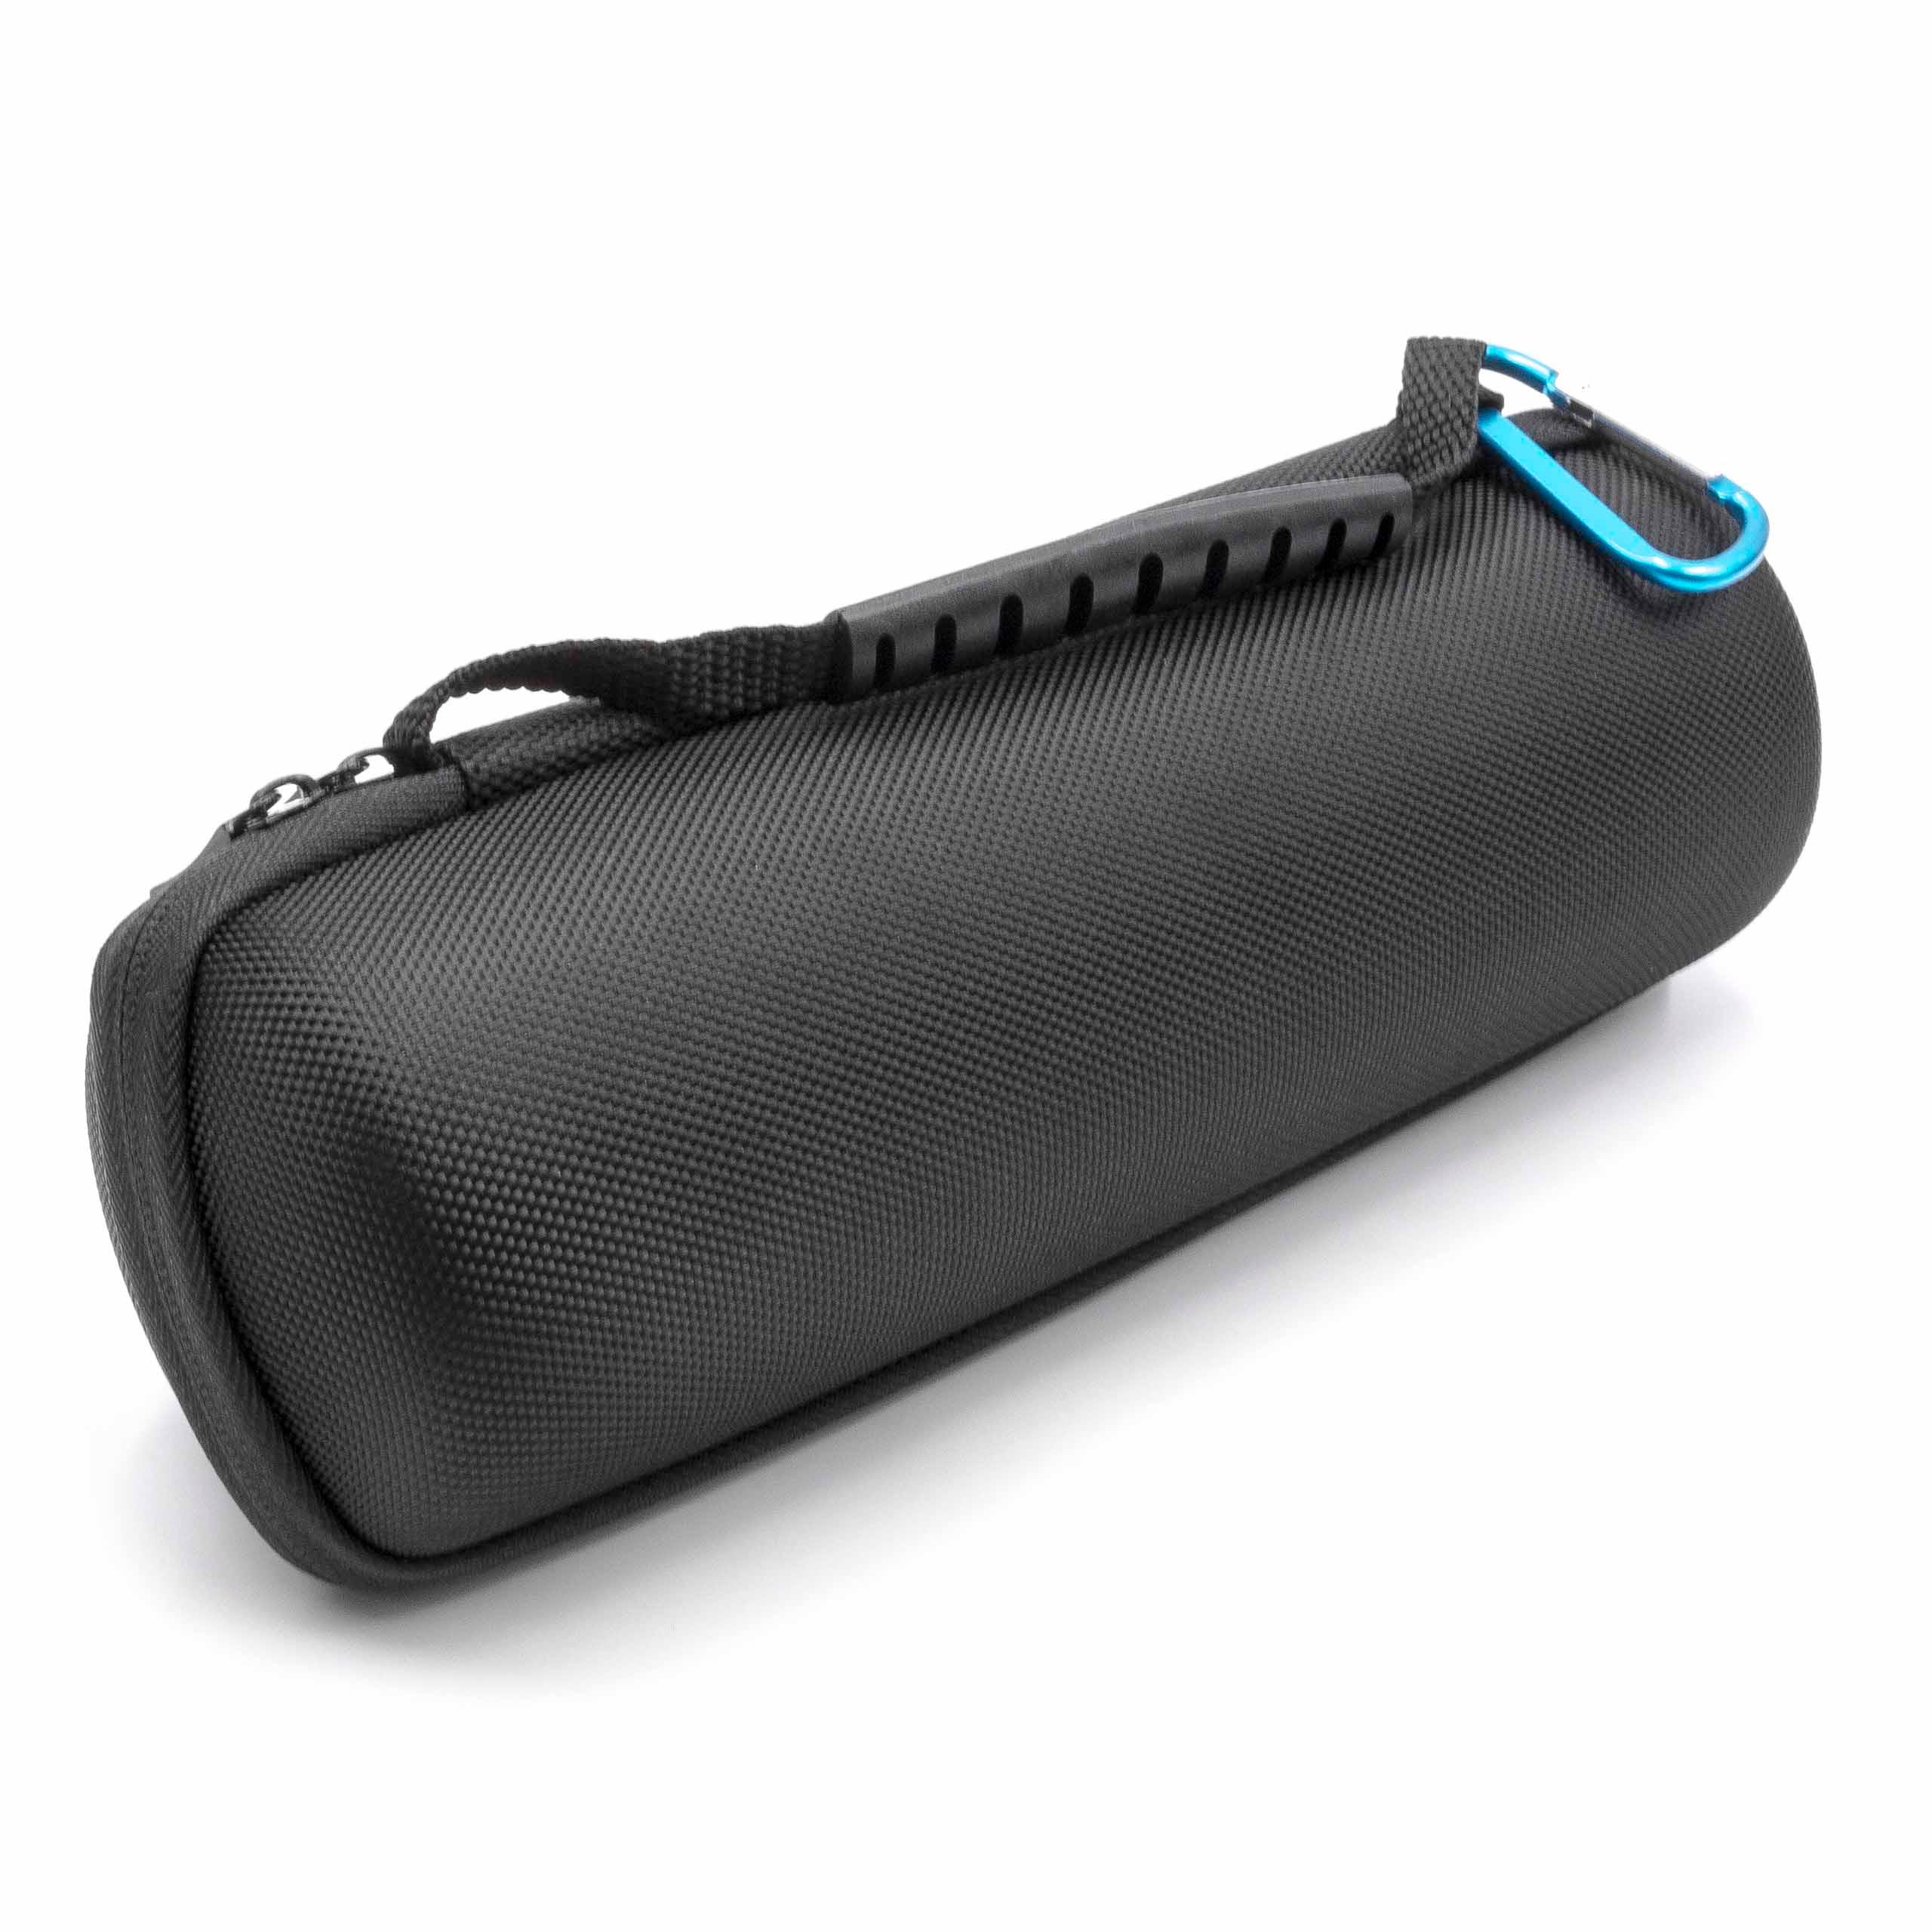 Schutzhülle Hülle Tasche Bag Pouch Box für JBL Flip 5 Kabellos Bluetooth Speaker 